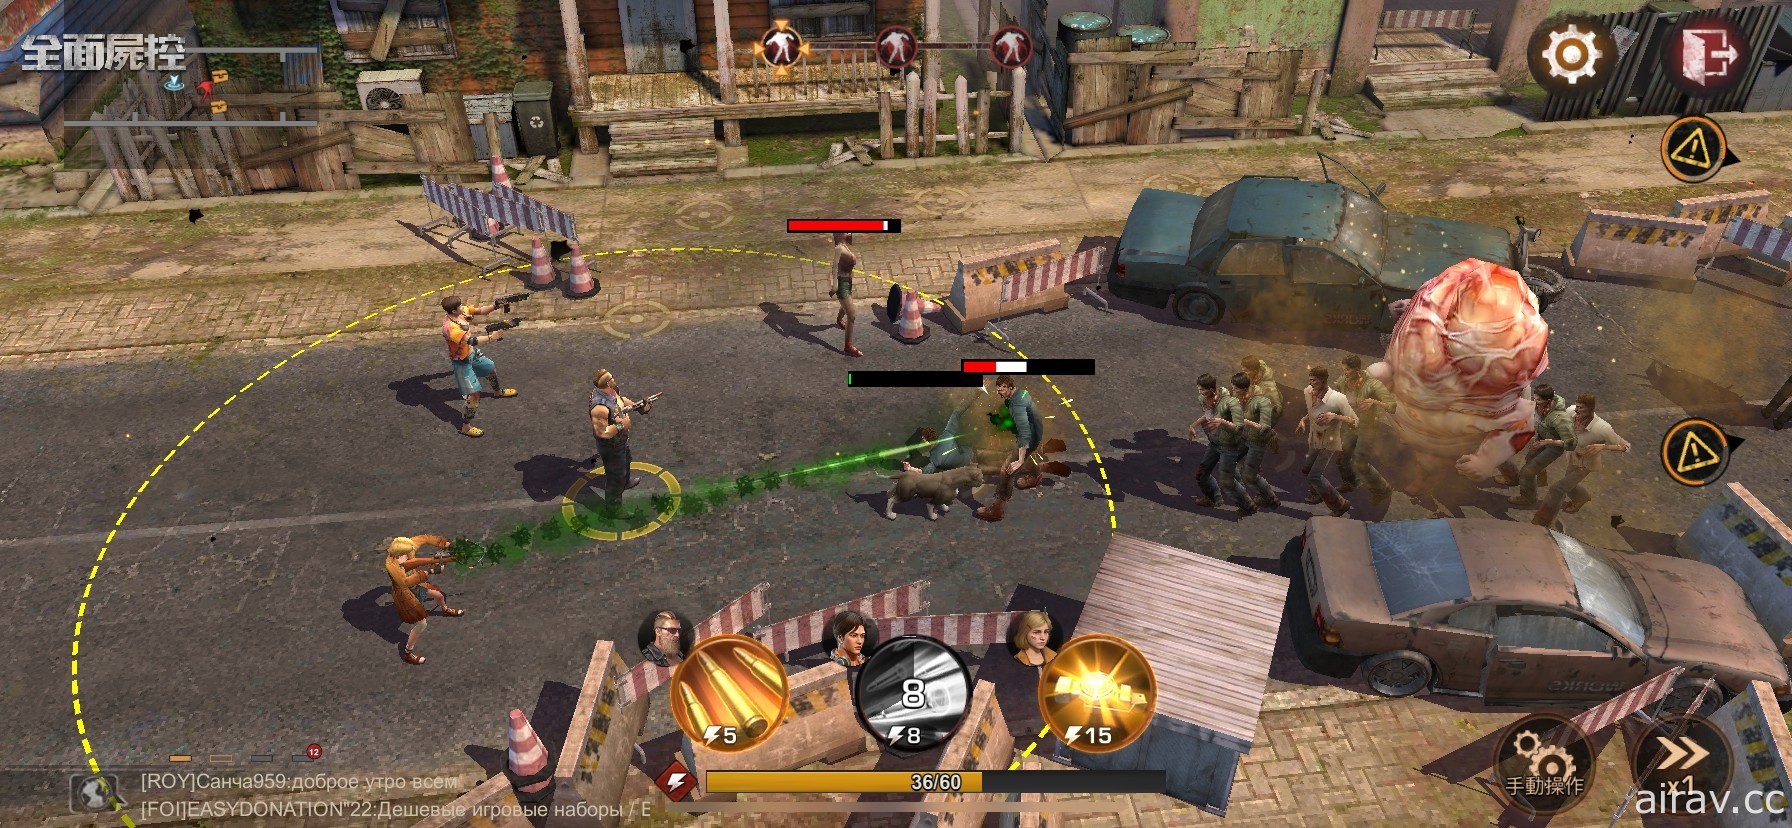 丧尸题材末日生存策略游戏《全面尸控》双平台上线 公开游戏五大特色